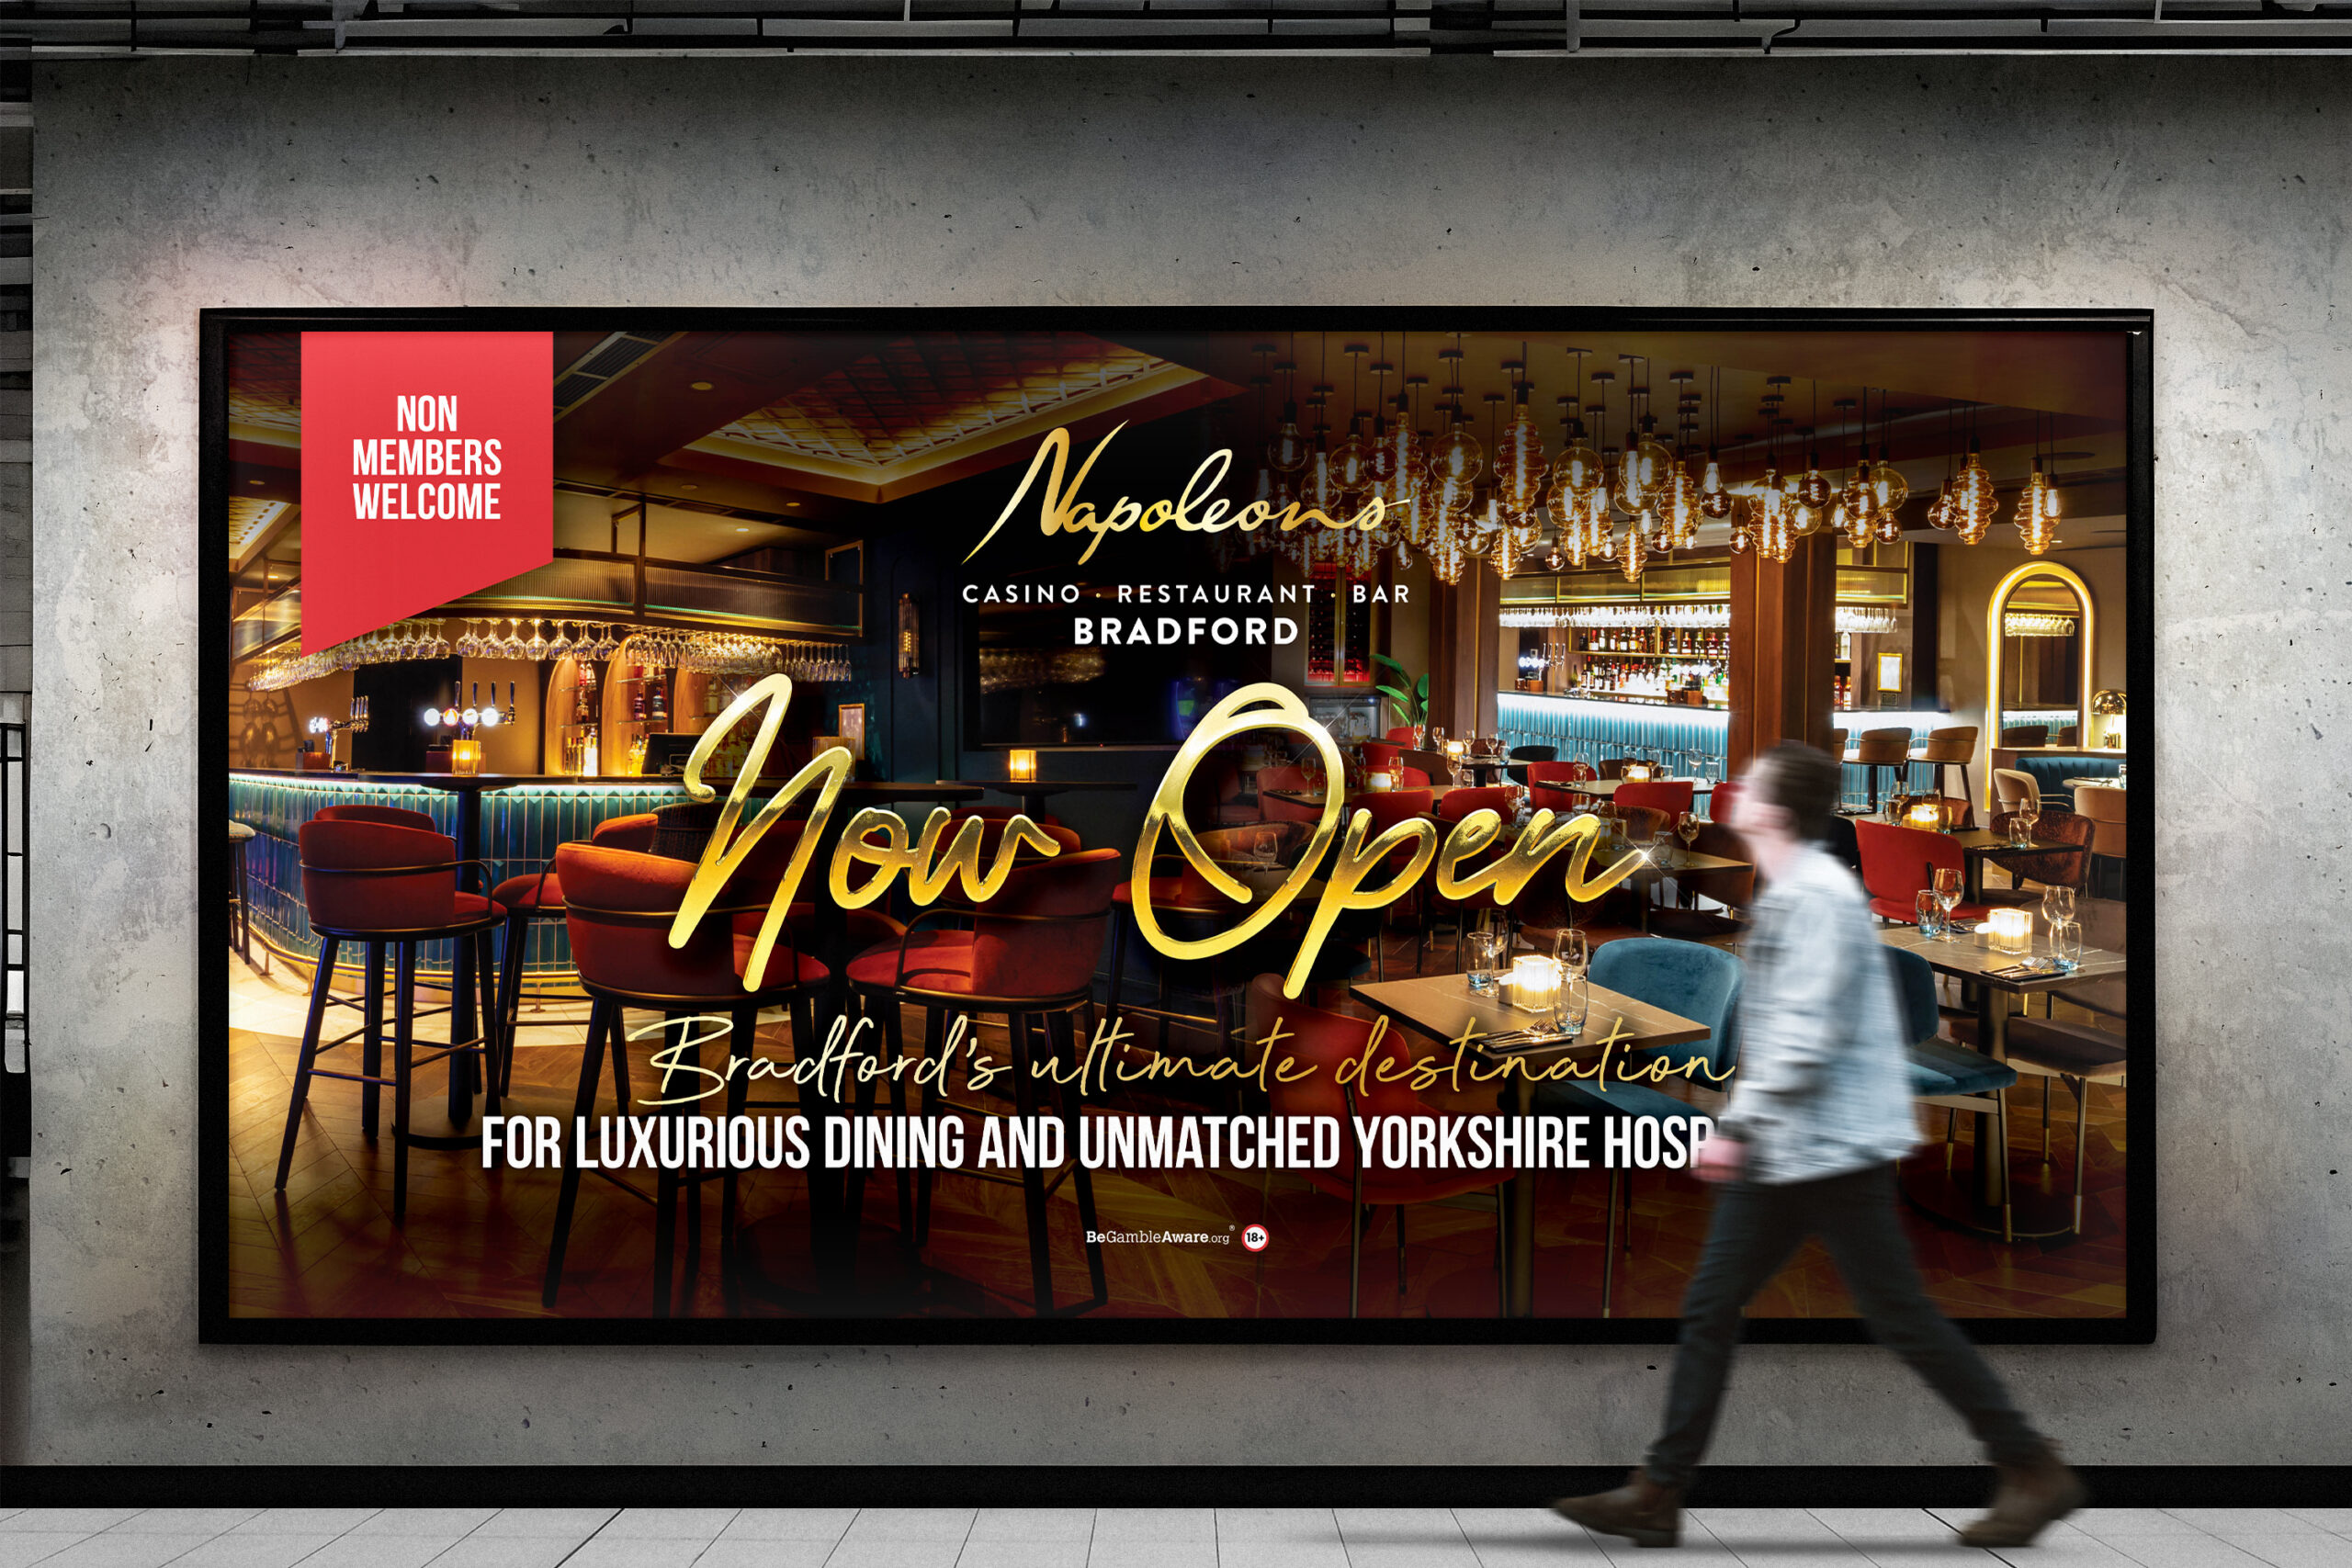 Napoleons Casino and Restaurant, Bradford, Re-Launch Campaign - Fenti Marketing